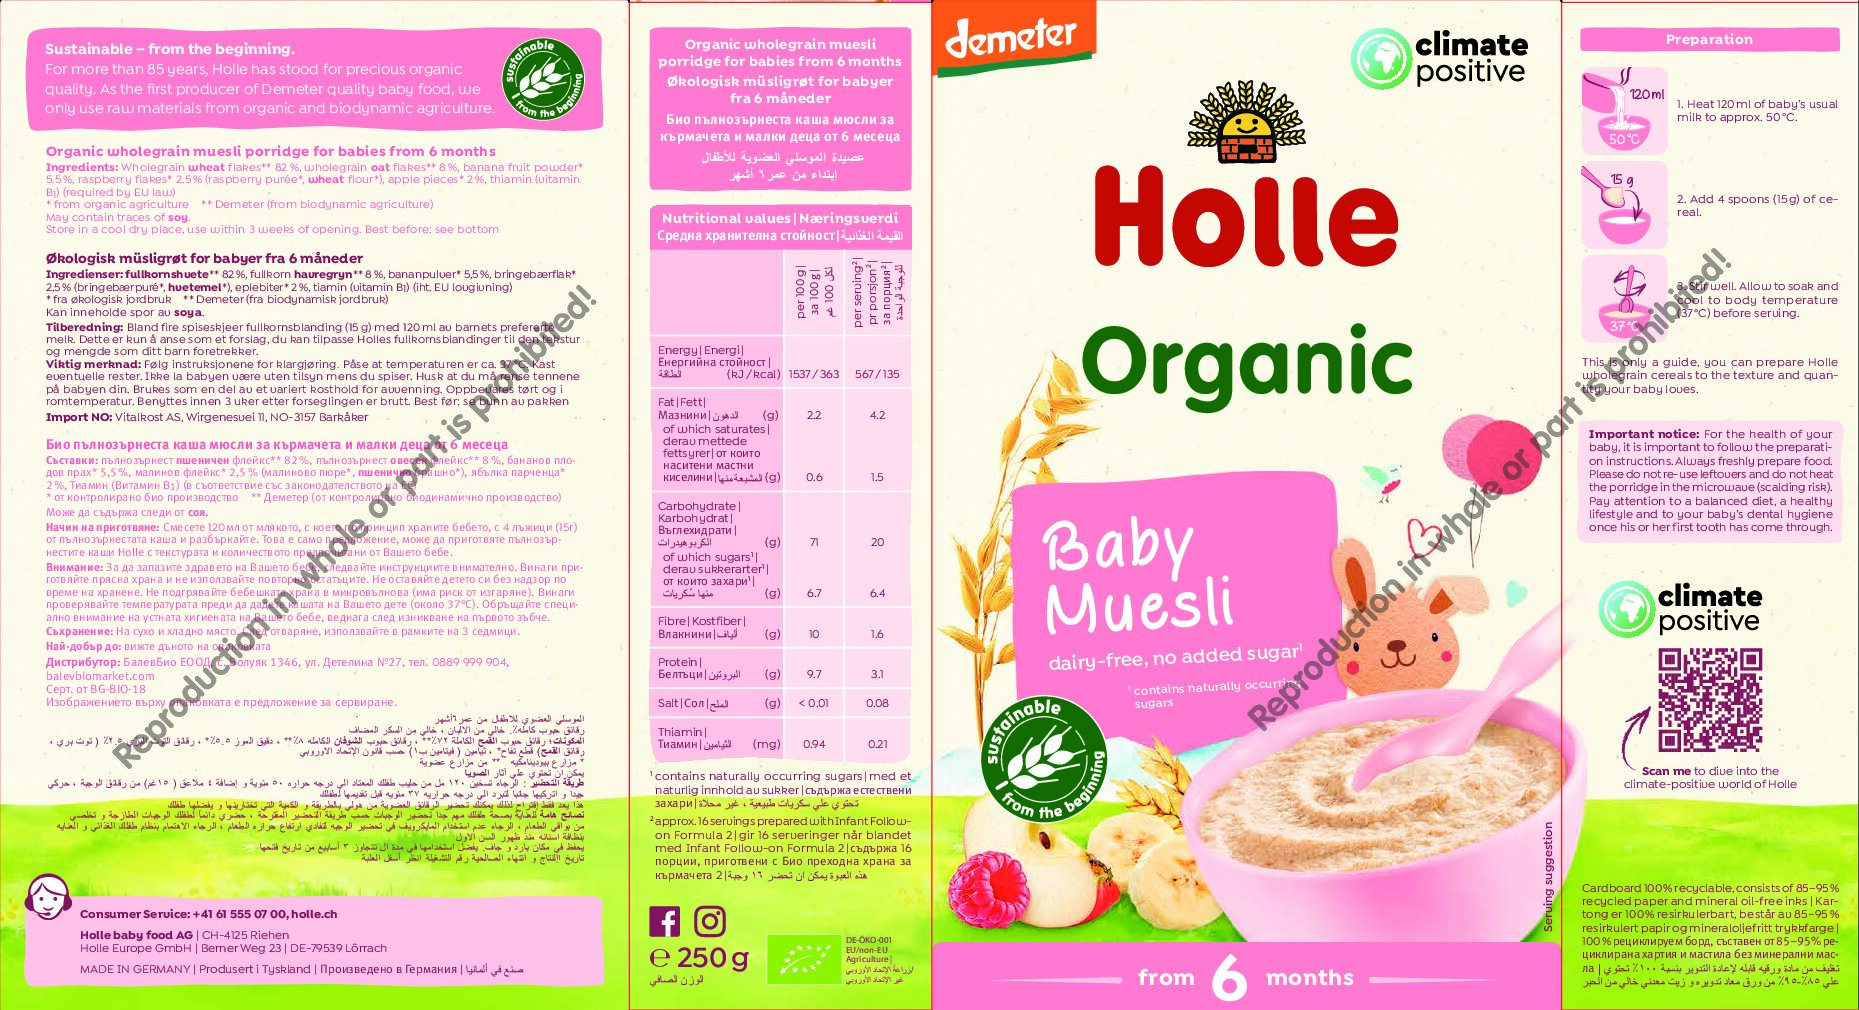 Holle Muesli Bio Demeter pour Bébé aux Céréales Complètes, 250 g -  Piccantino